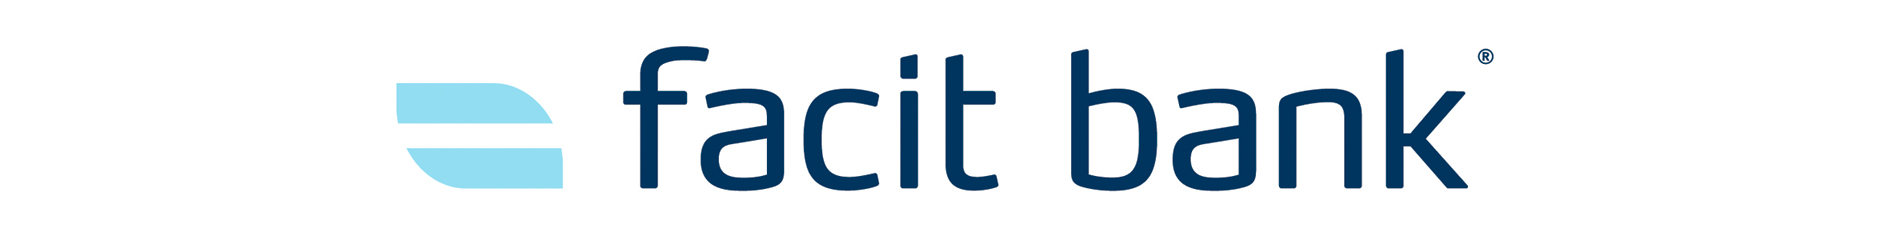 Facit Bank søker kunderådgiver med erfaring fra bank